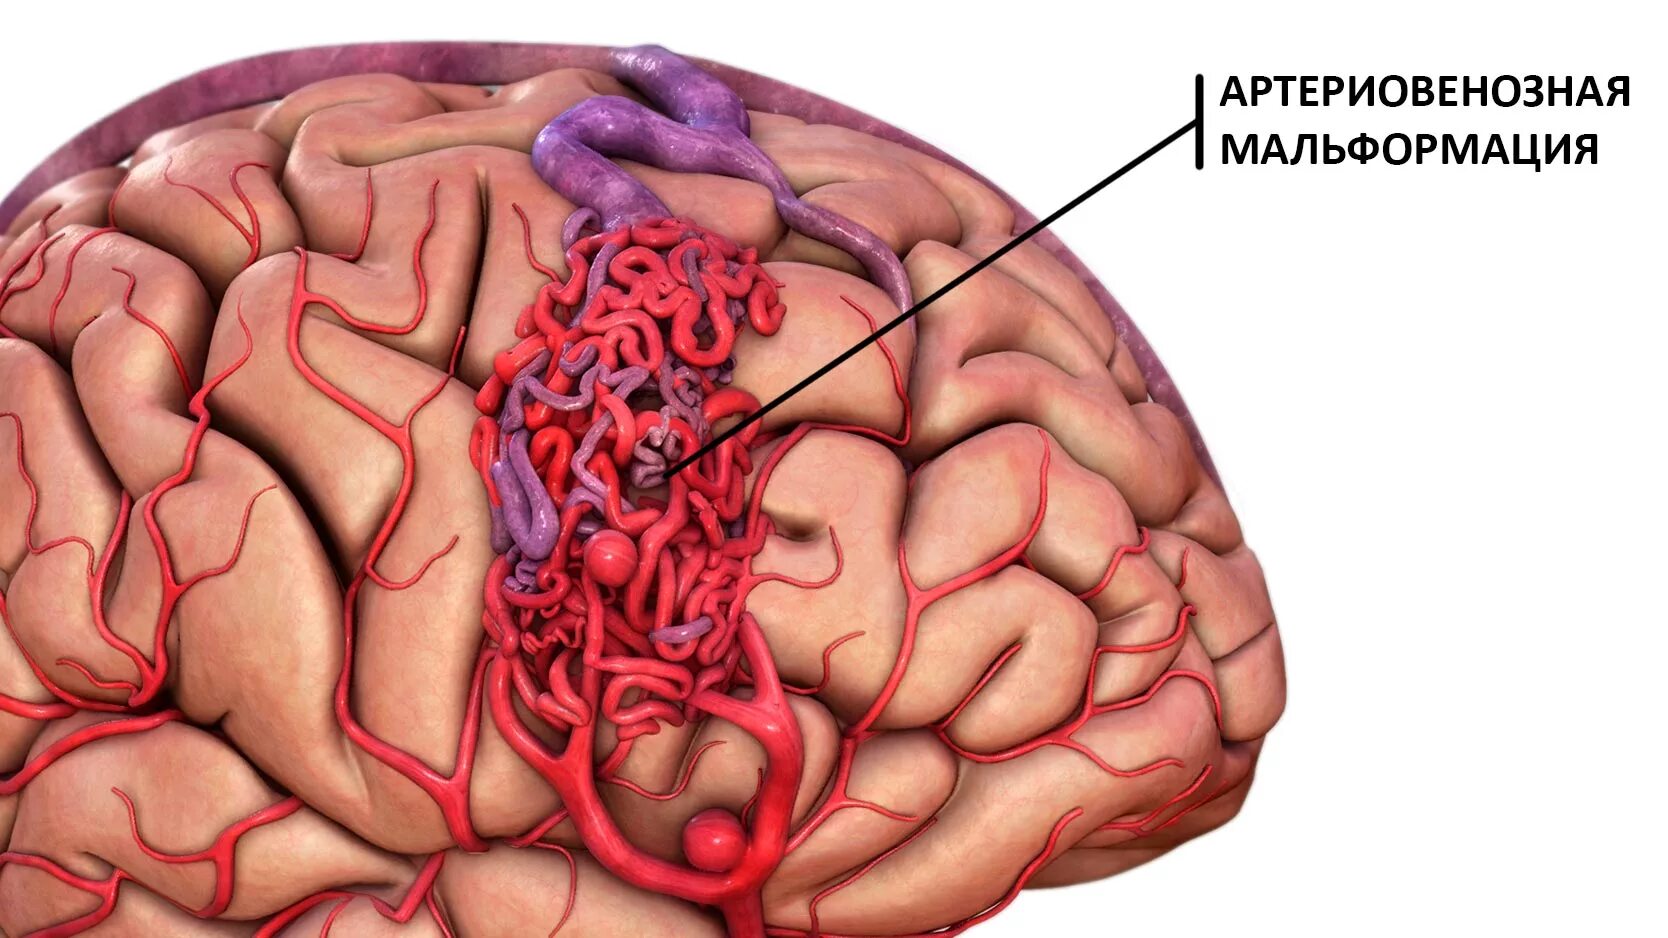 АВМ мальформация сосудов головного мозга. Ртерио-венозная мальформация. Артериовенозная мальформация. Артериовенозные мальформации (АВМ) головного мозга..